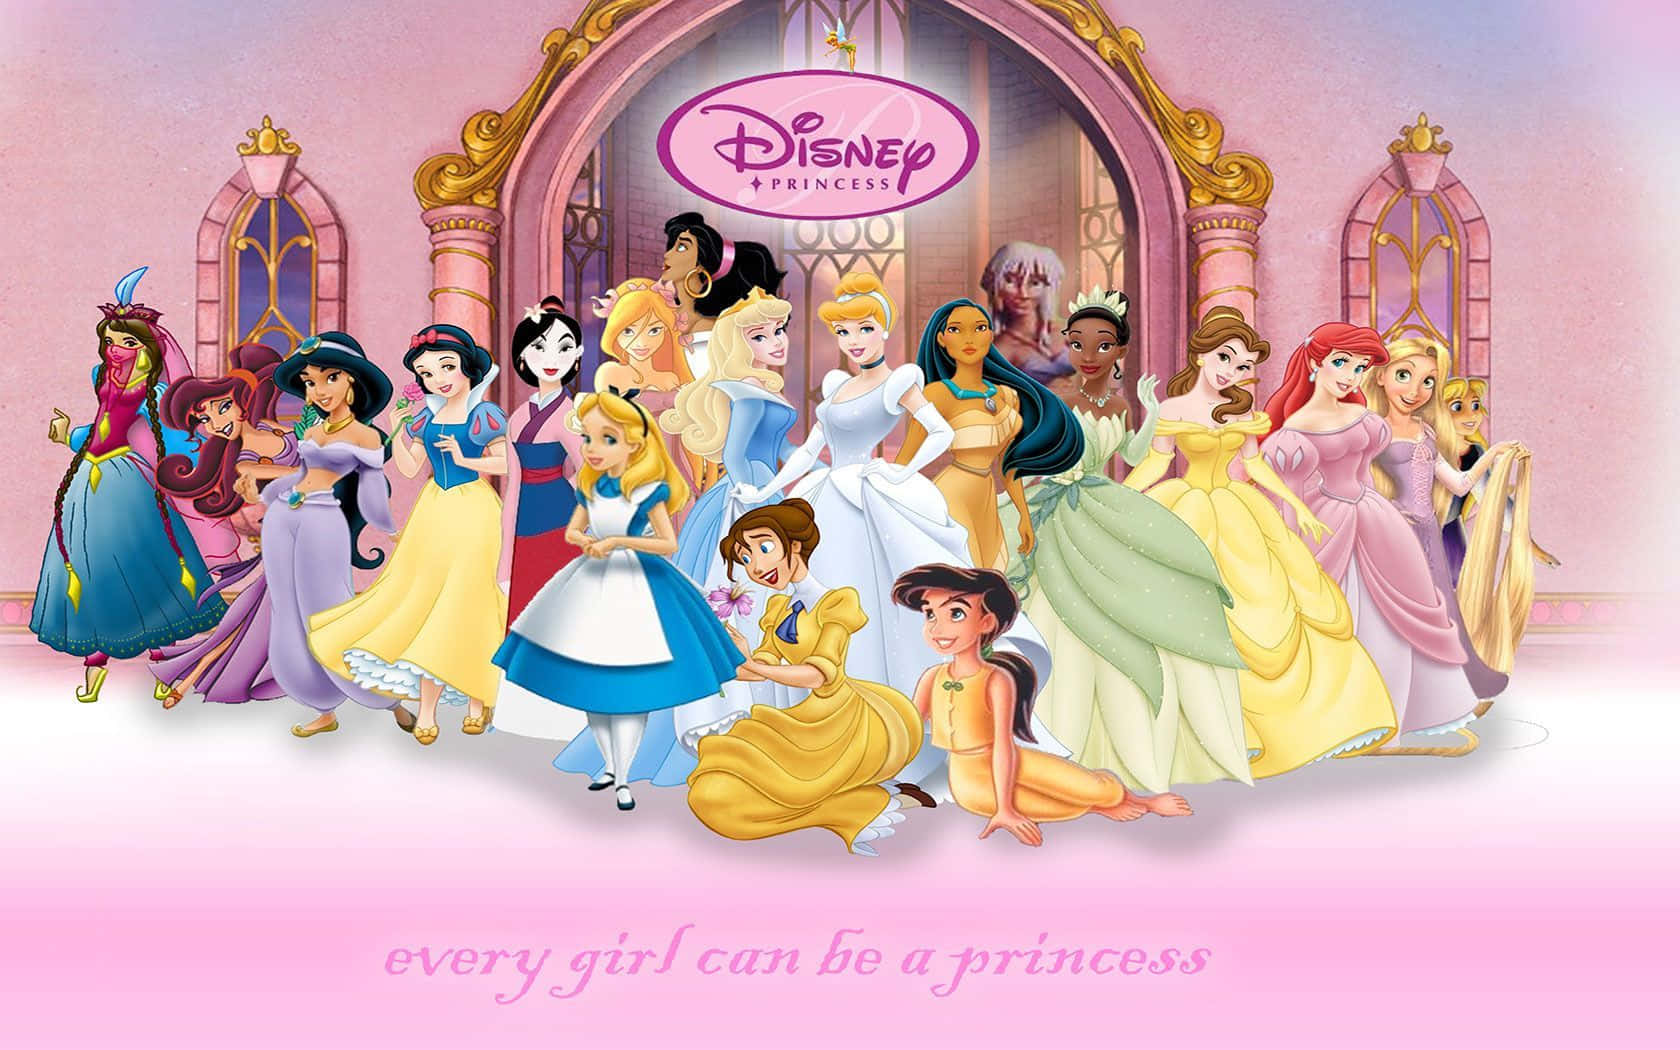 1.  Disney Princesses - Make your own magical dreams come true